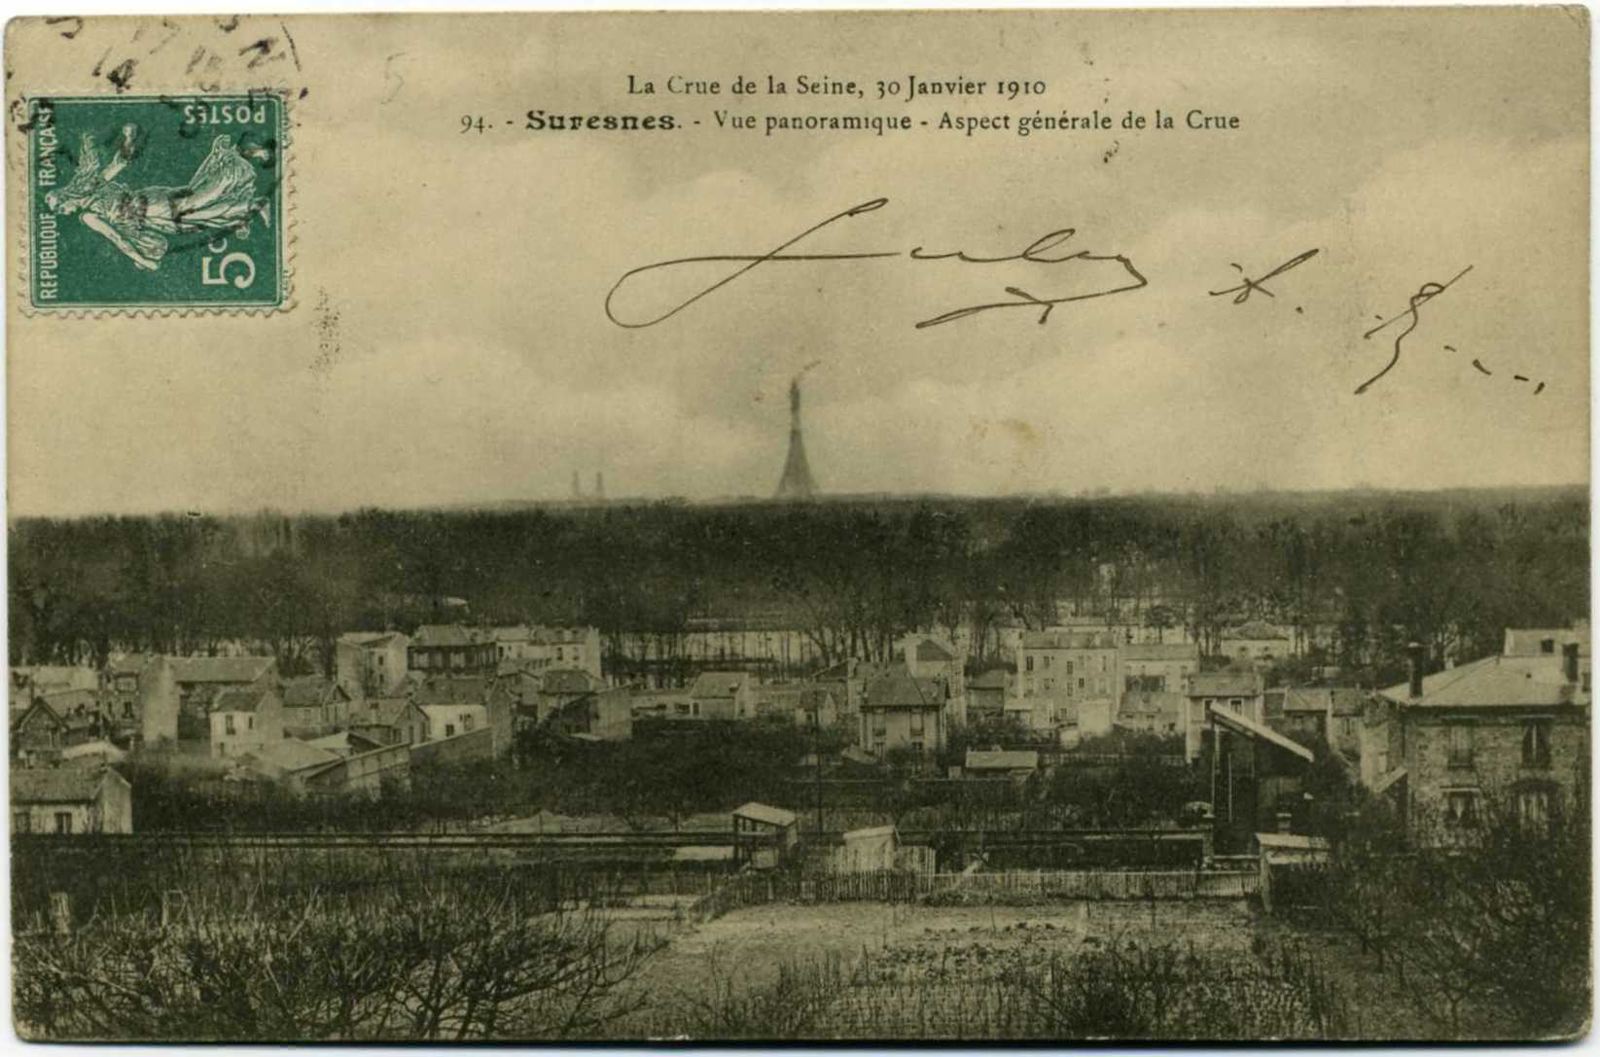 Suresnes - Panorama - La Crue de la Seine, 30 janvier 1910